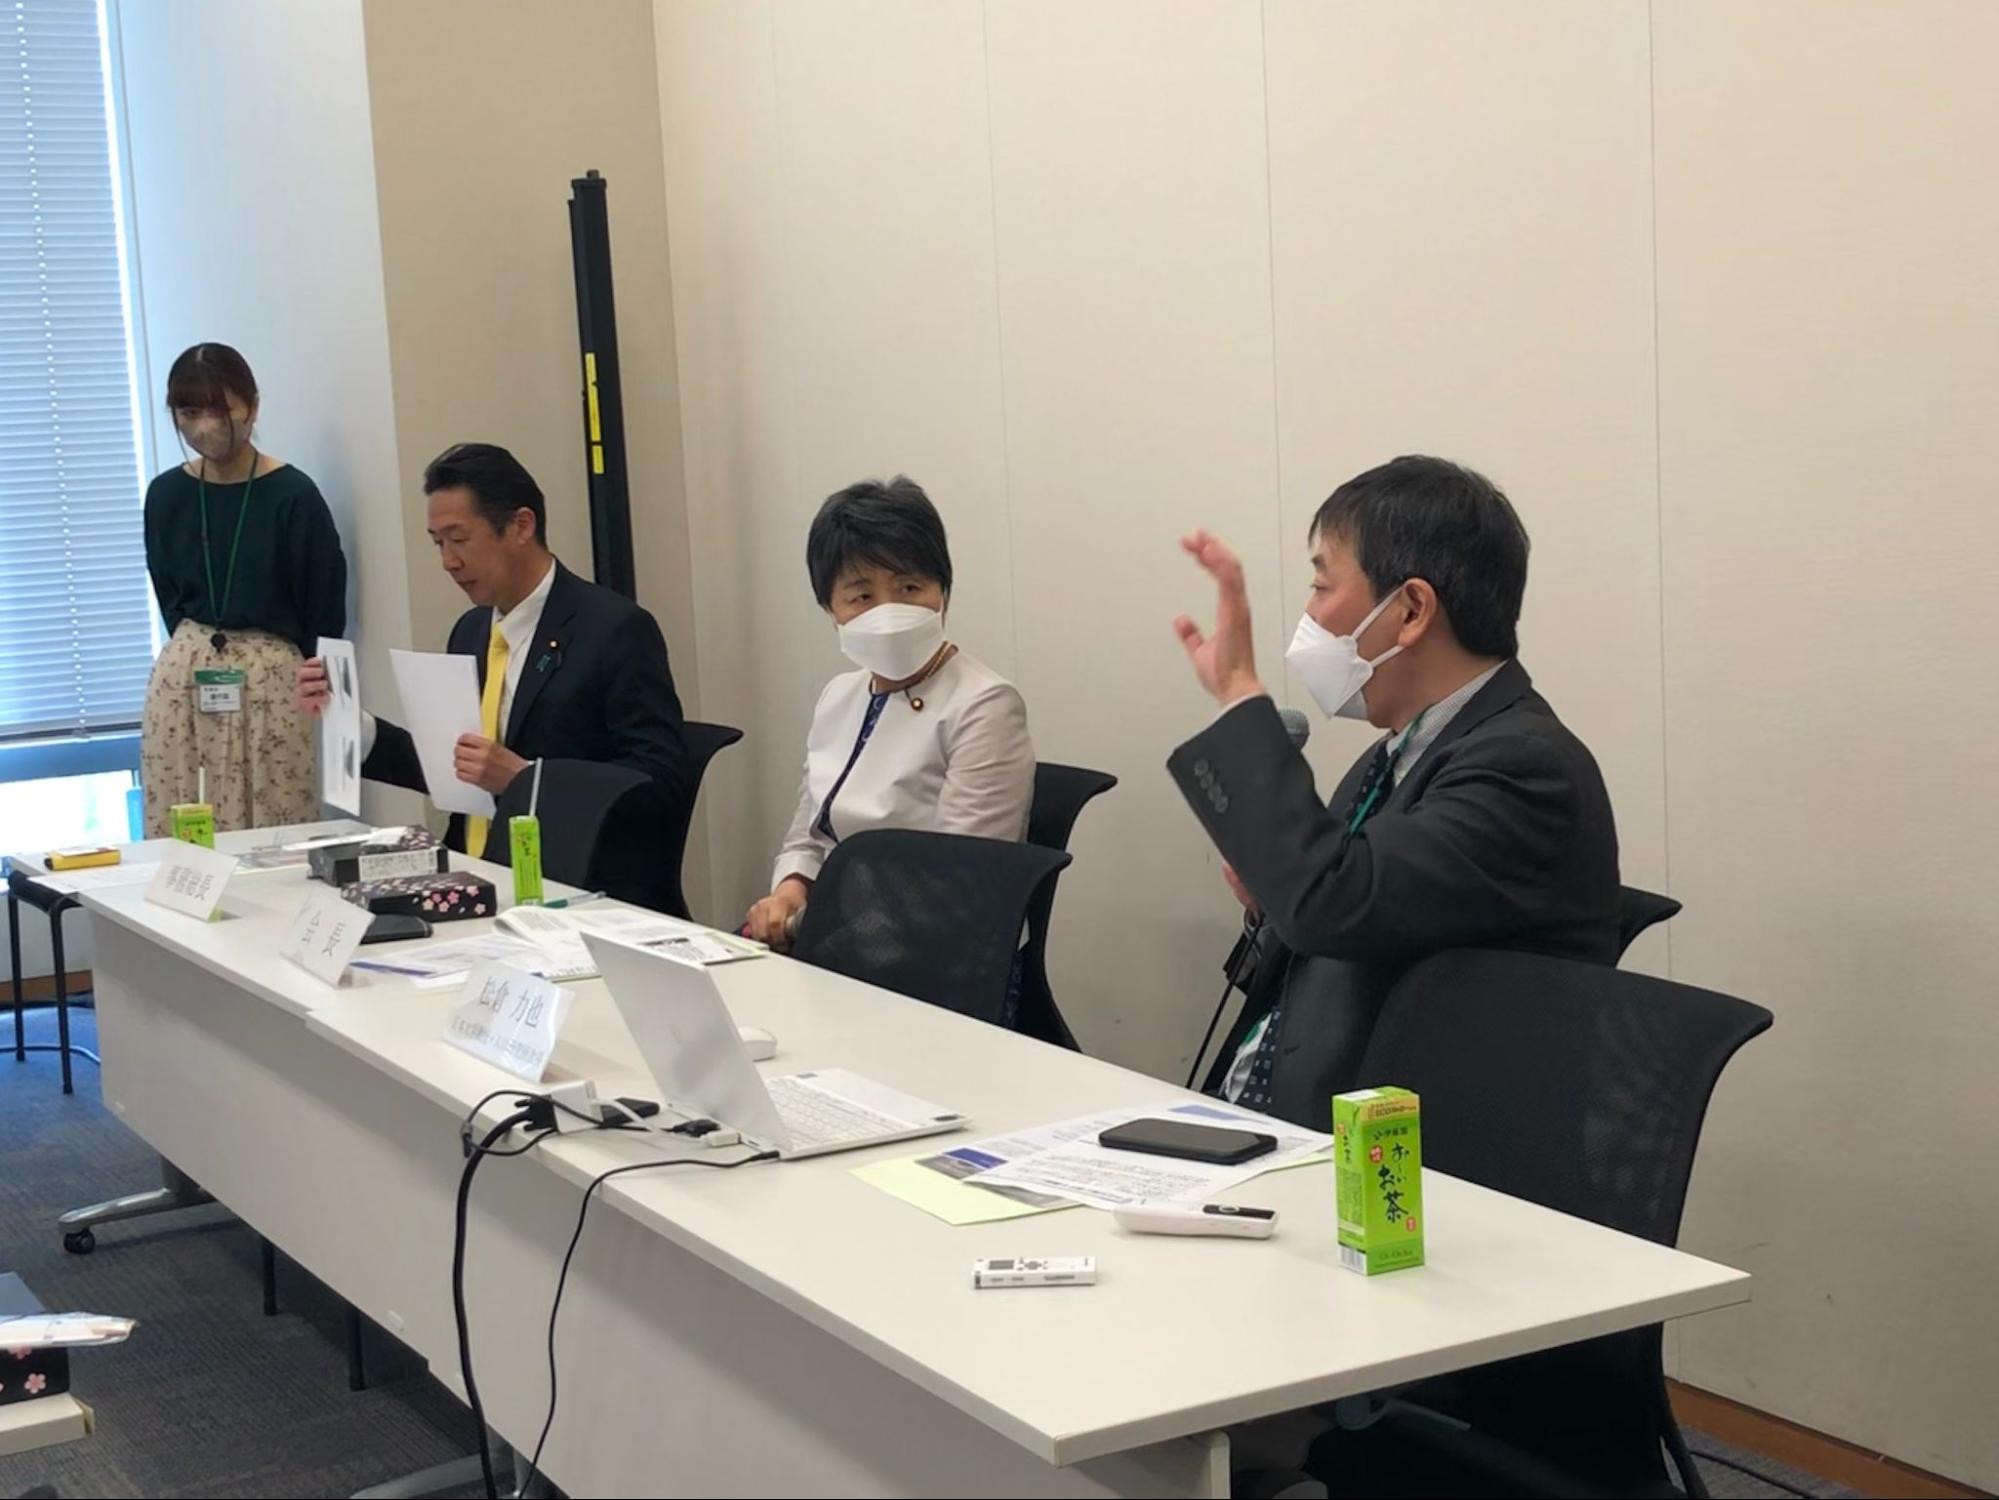 黄川田JPFP事務総長（左）、上川陽子JPFP会長（中央）、松倉力也日本大学人口研究所次長（右）